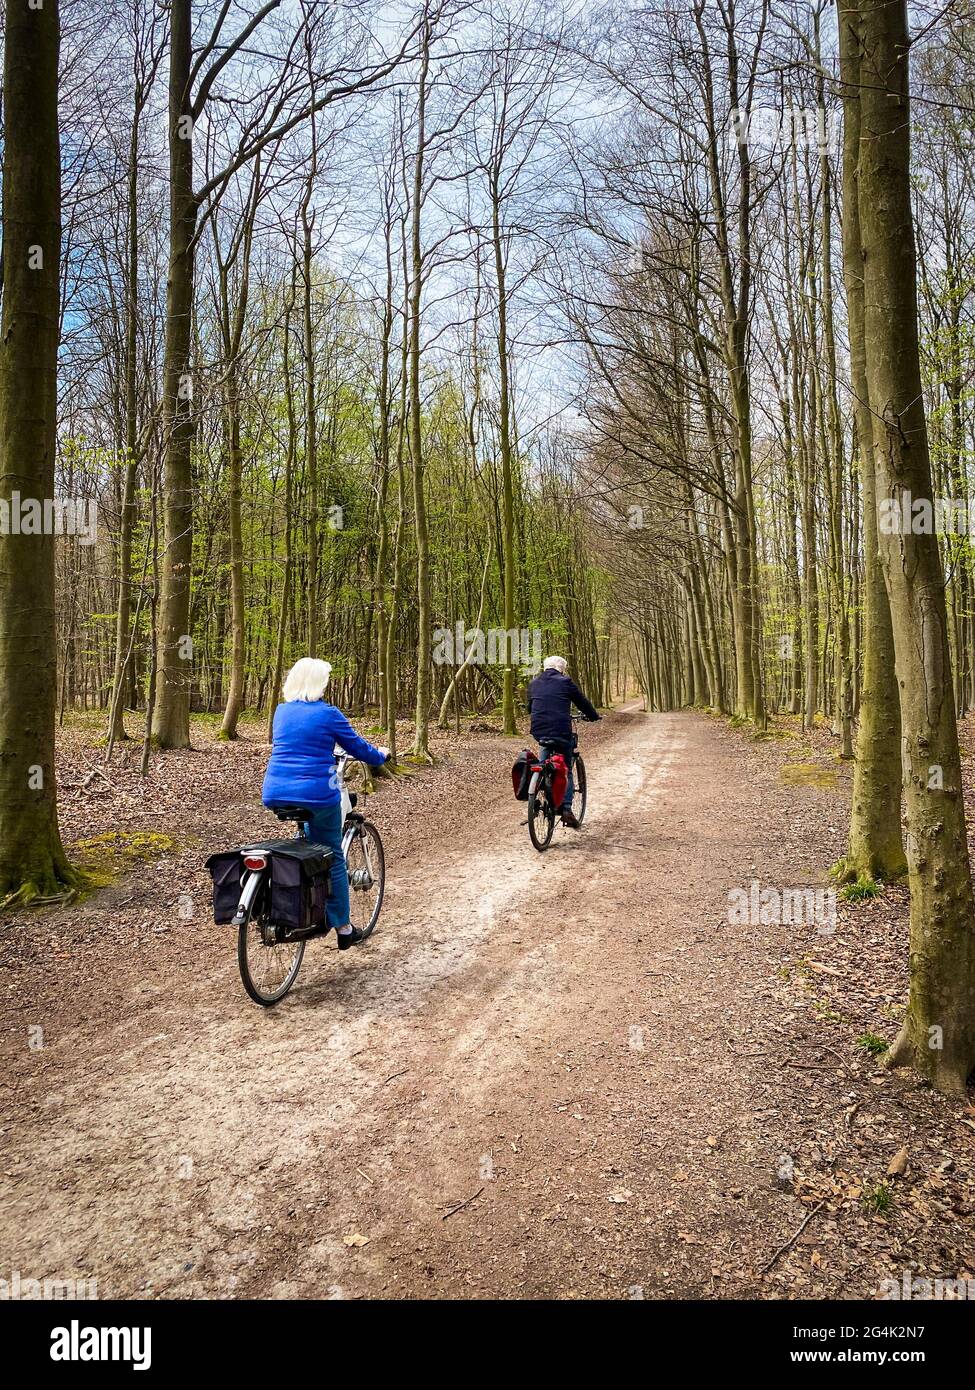 Zwei ältere kaukasische Menschen, die im Sonischen Wald, in der Nähe des belgischen Brüsseler Aera, Fahrrad fahren Stockfoto